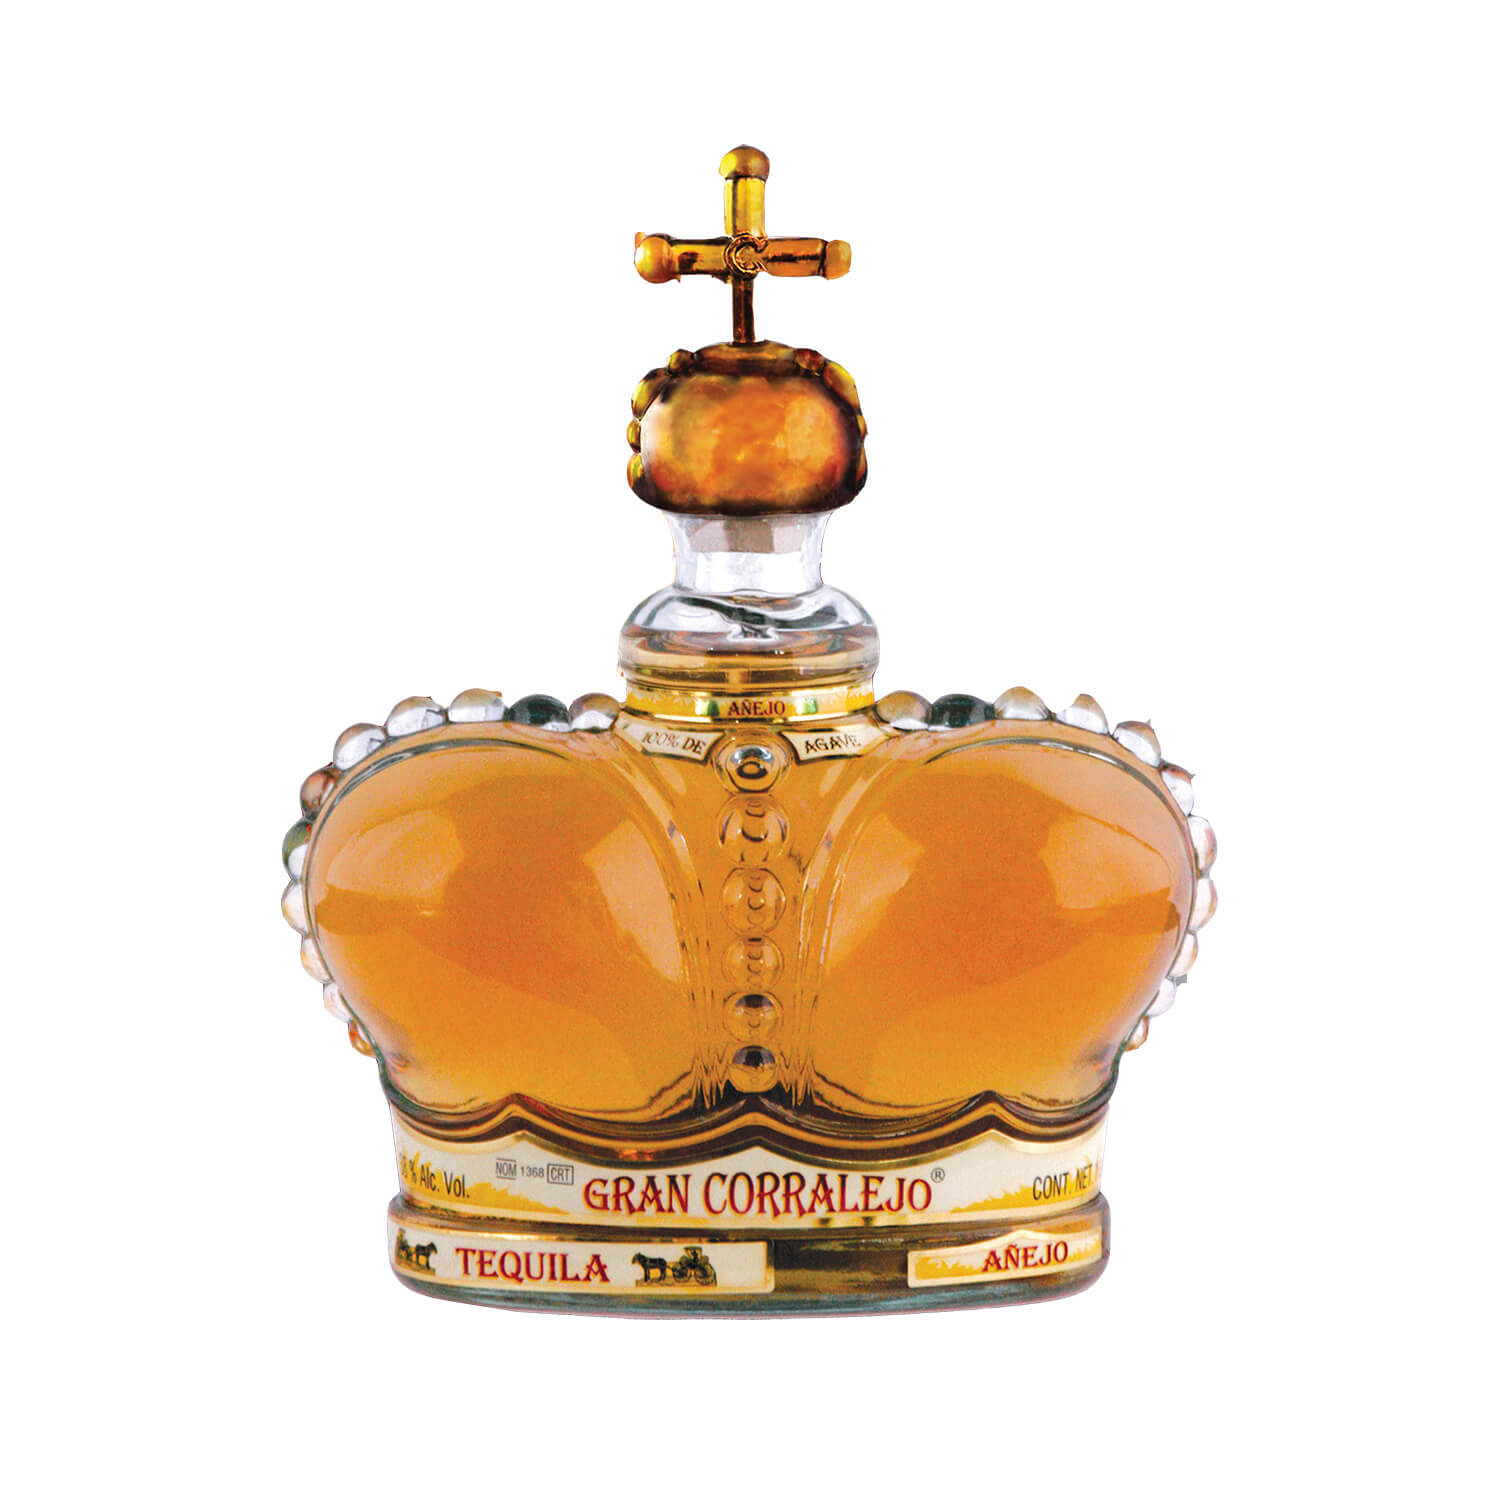 Product image for “Tequila Corralejo Gran Anejo”